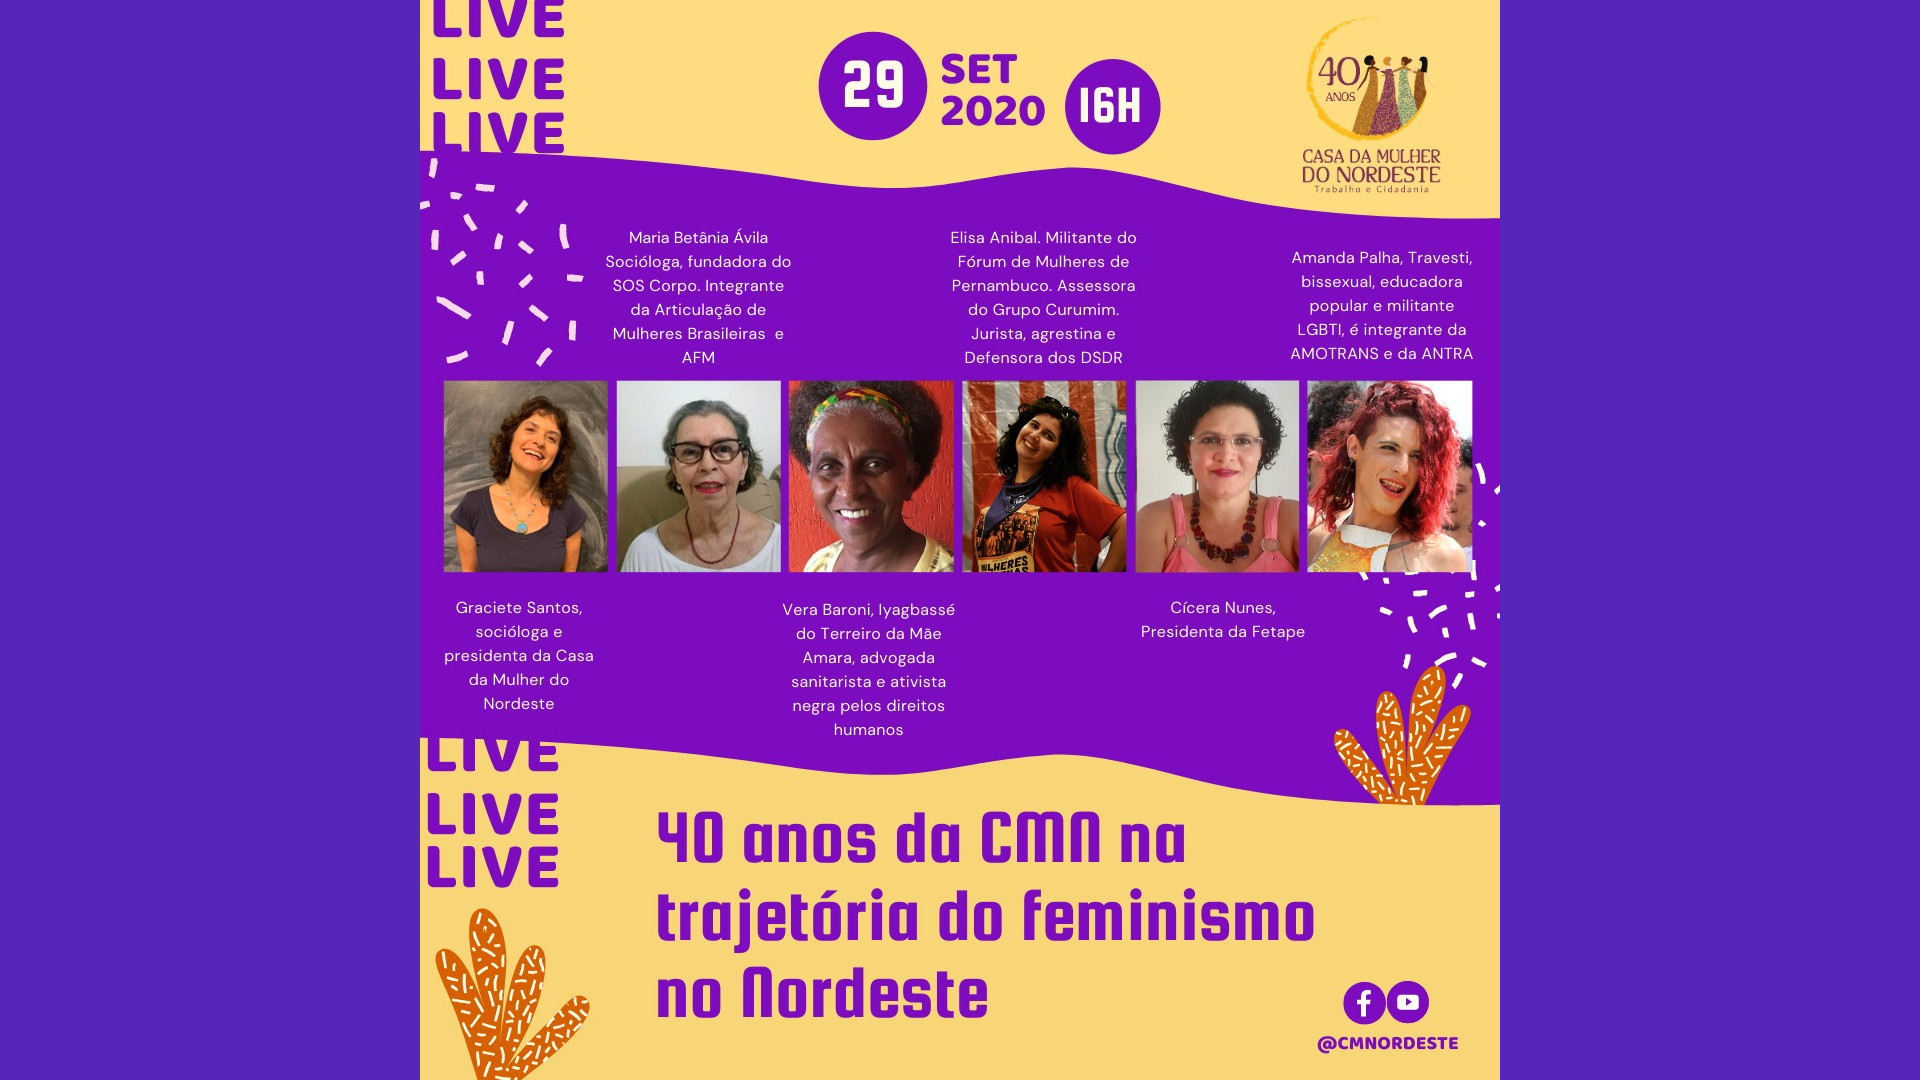 Casa da Mulher do Nordeste comemora 40 anos de história e de feminismo